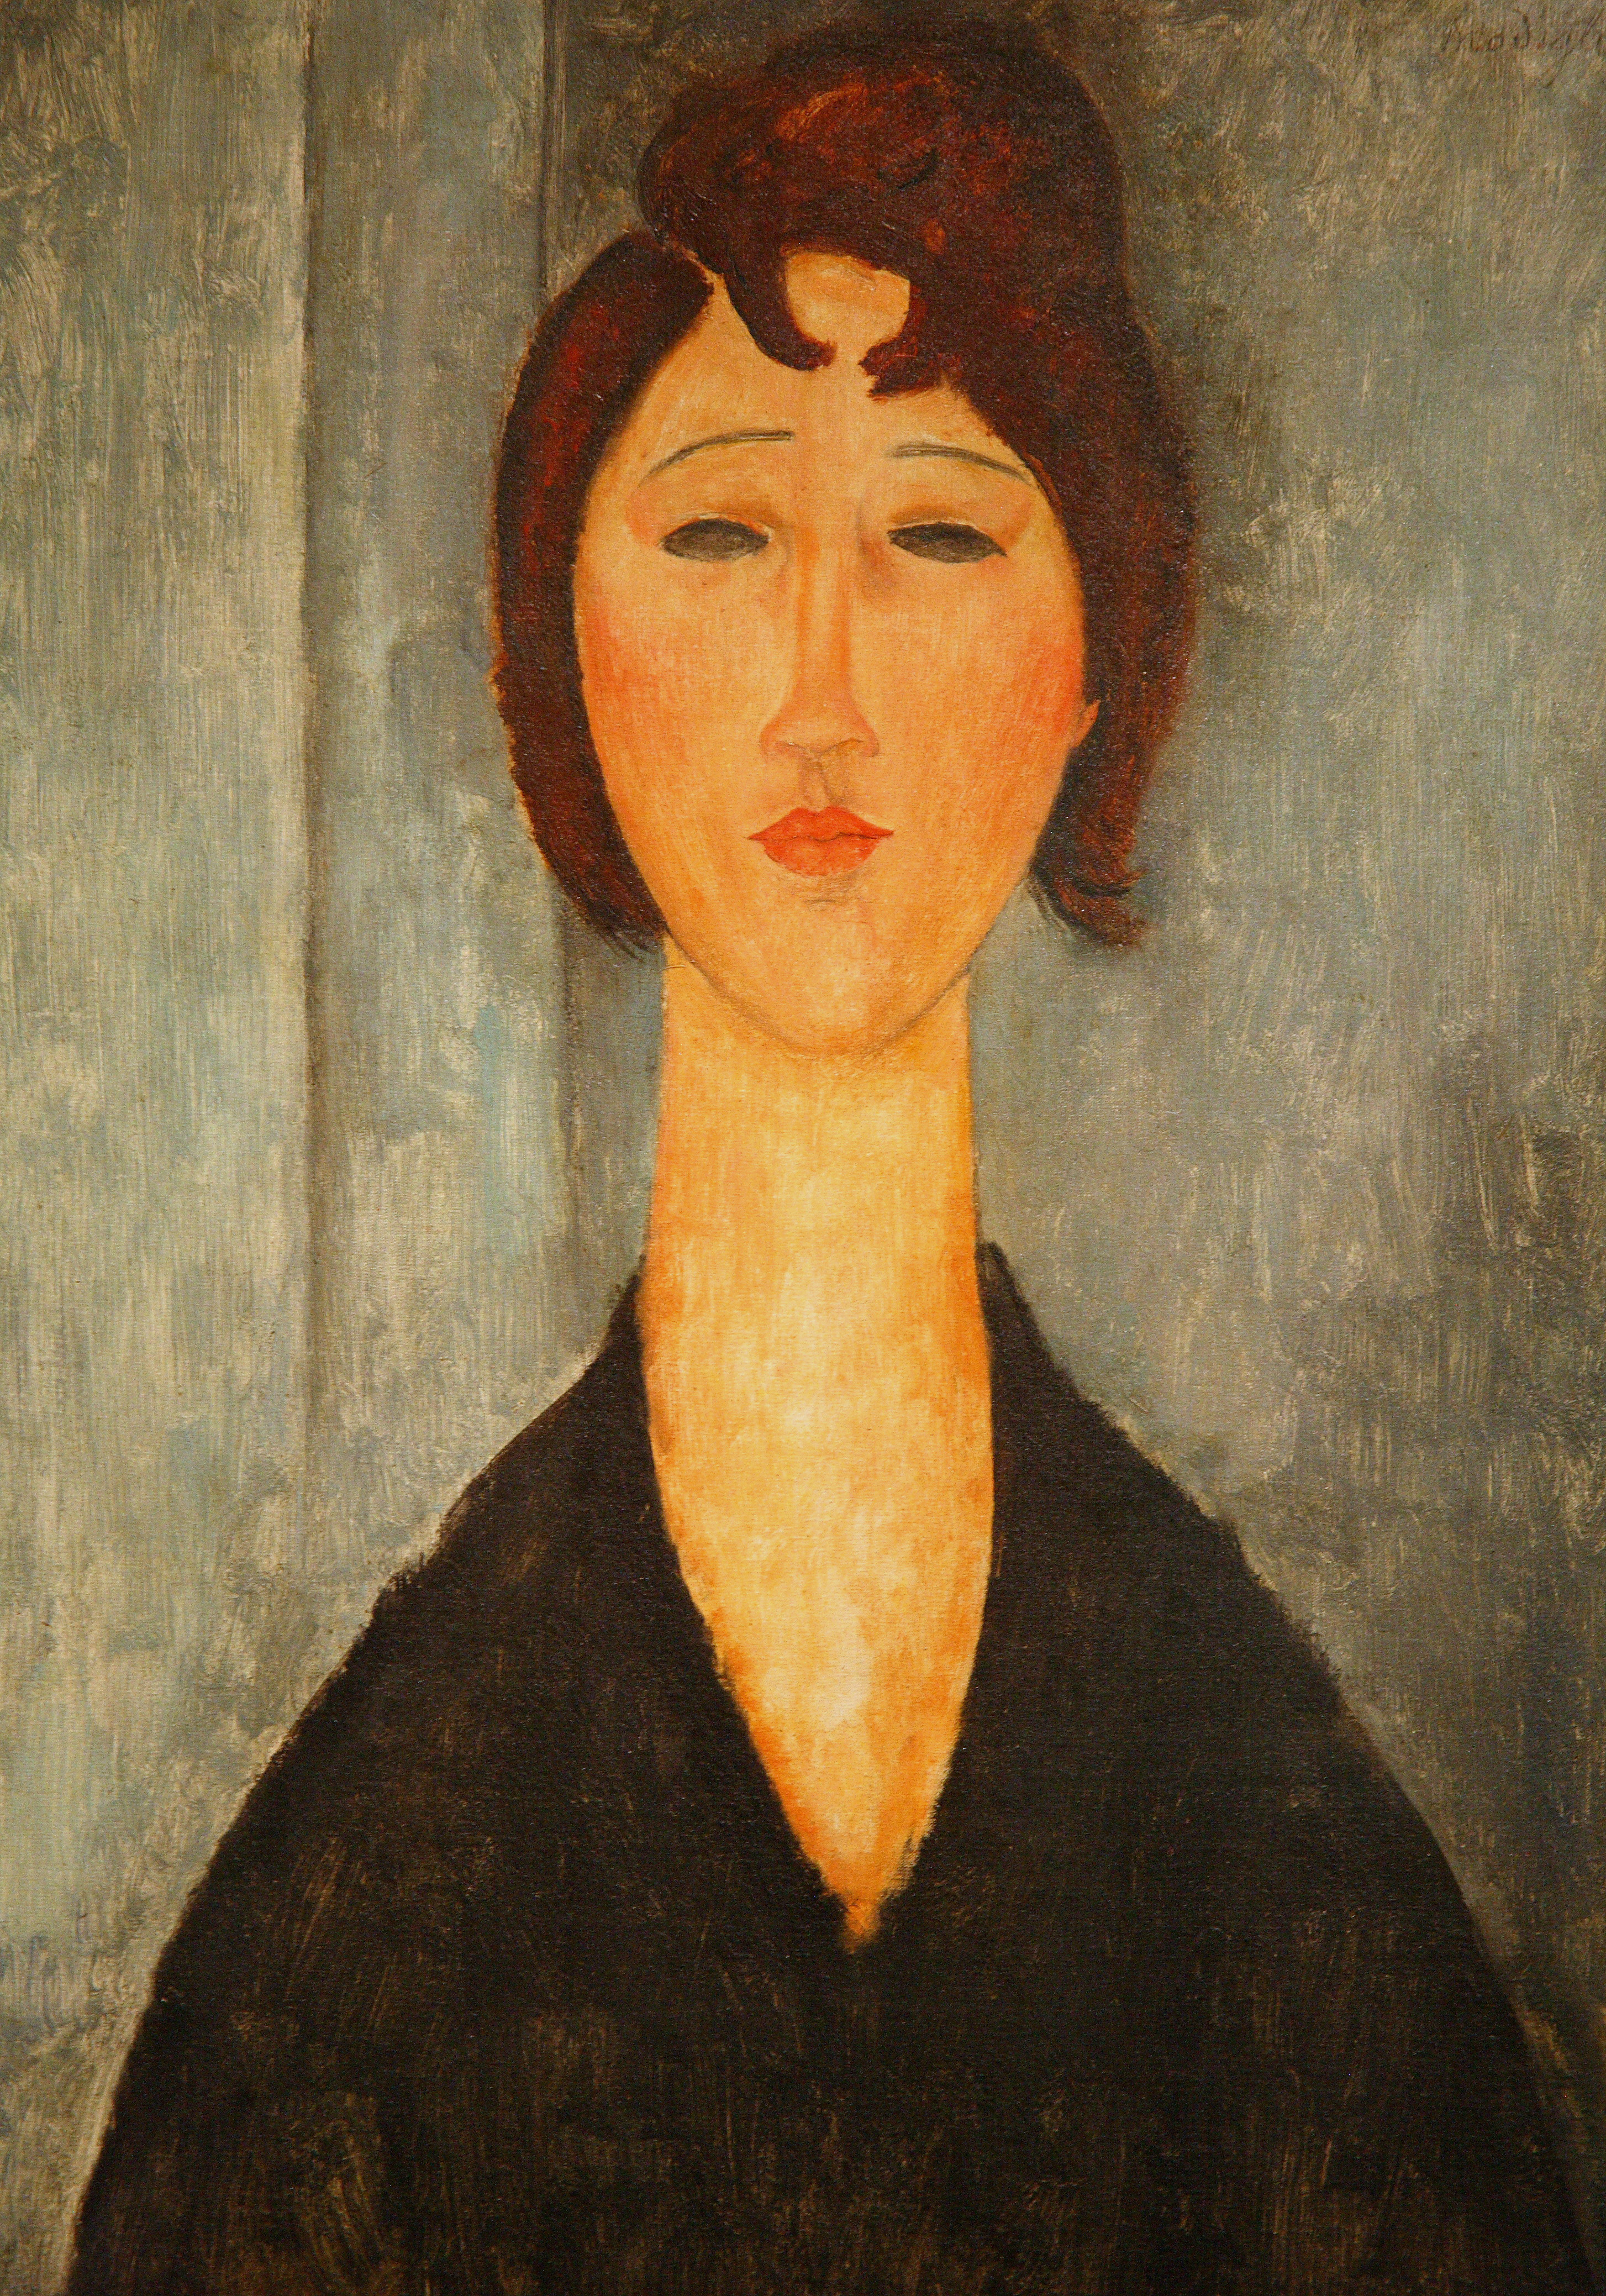 Fructífero El cuarto editorial Un repaso a la vida y obra de Amedeo Modigliani